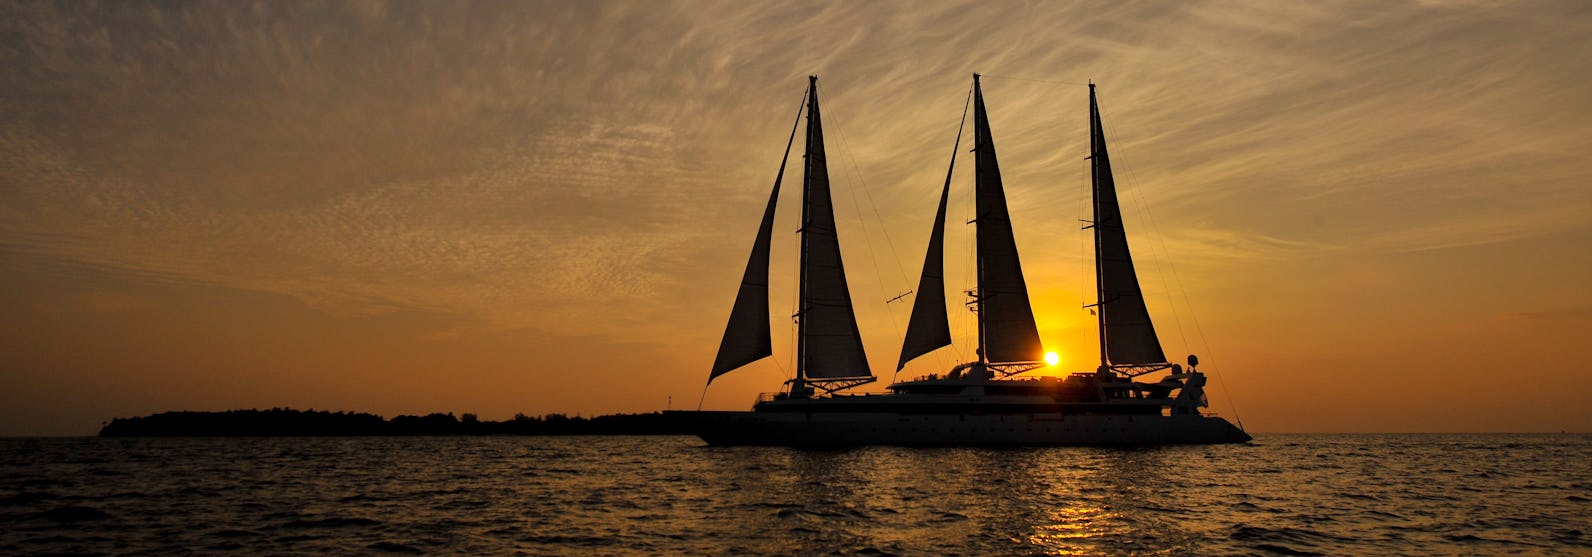 Kreuzfahrtschiff Le Ponant während der Fahrt im Sonnenuntergang